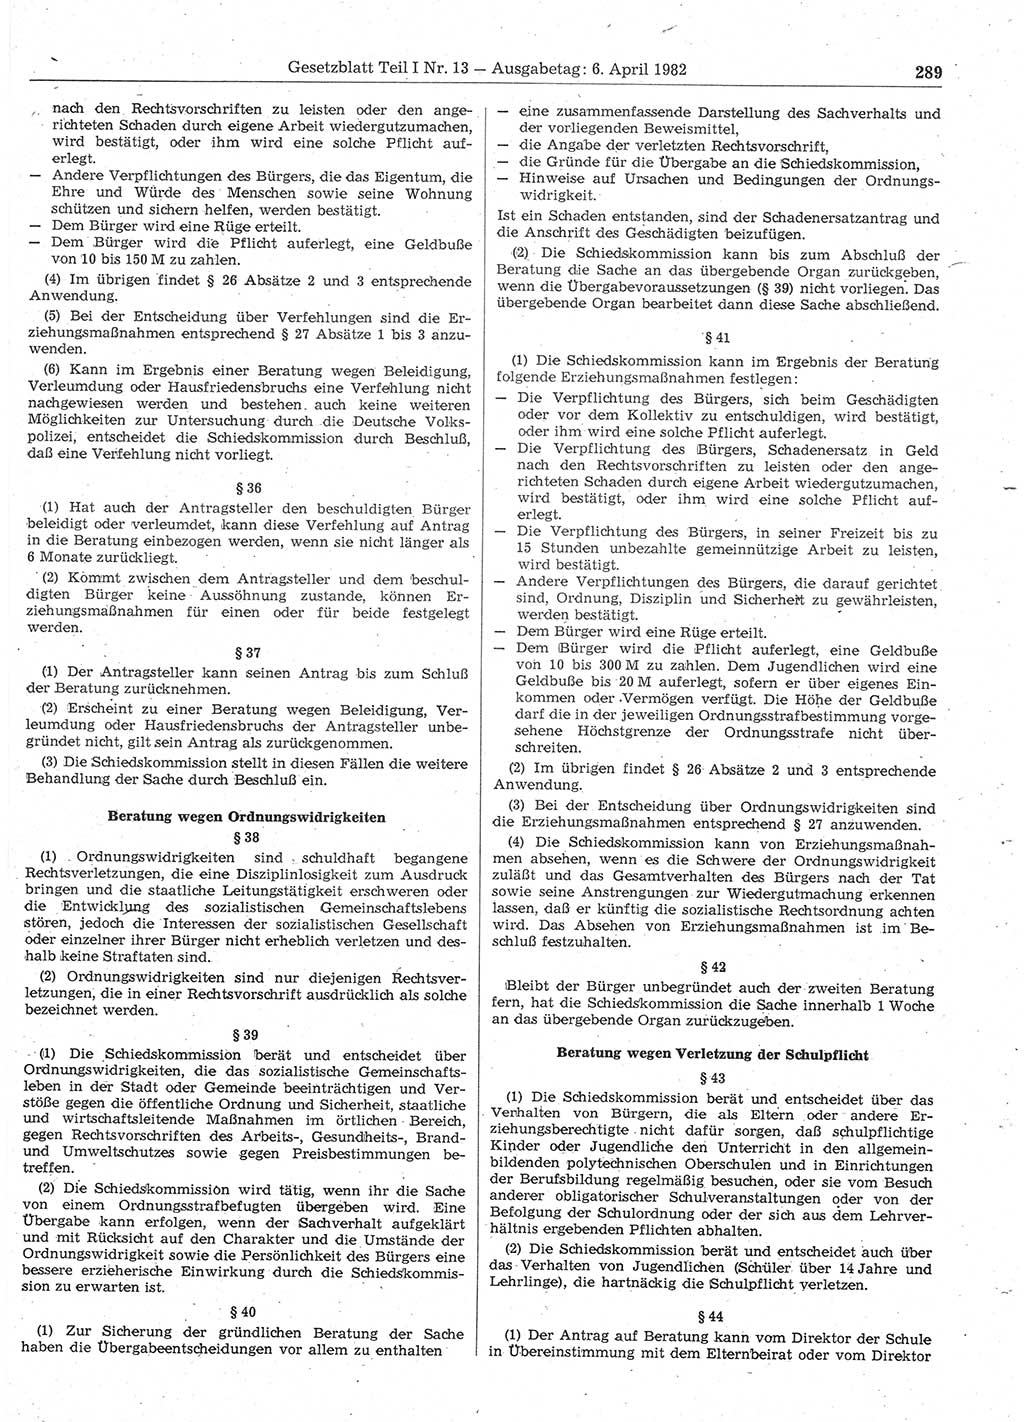 Gesetzblatt (GBl.) der Deutschen Demokratischen Republik (DDR) Teil Ⅰ 1982, Seite 289 (GBl. DDR Ⅰ 1982, S. 289)